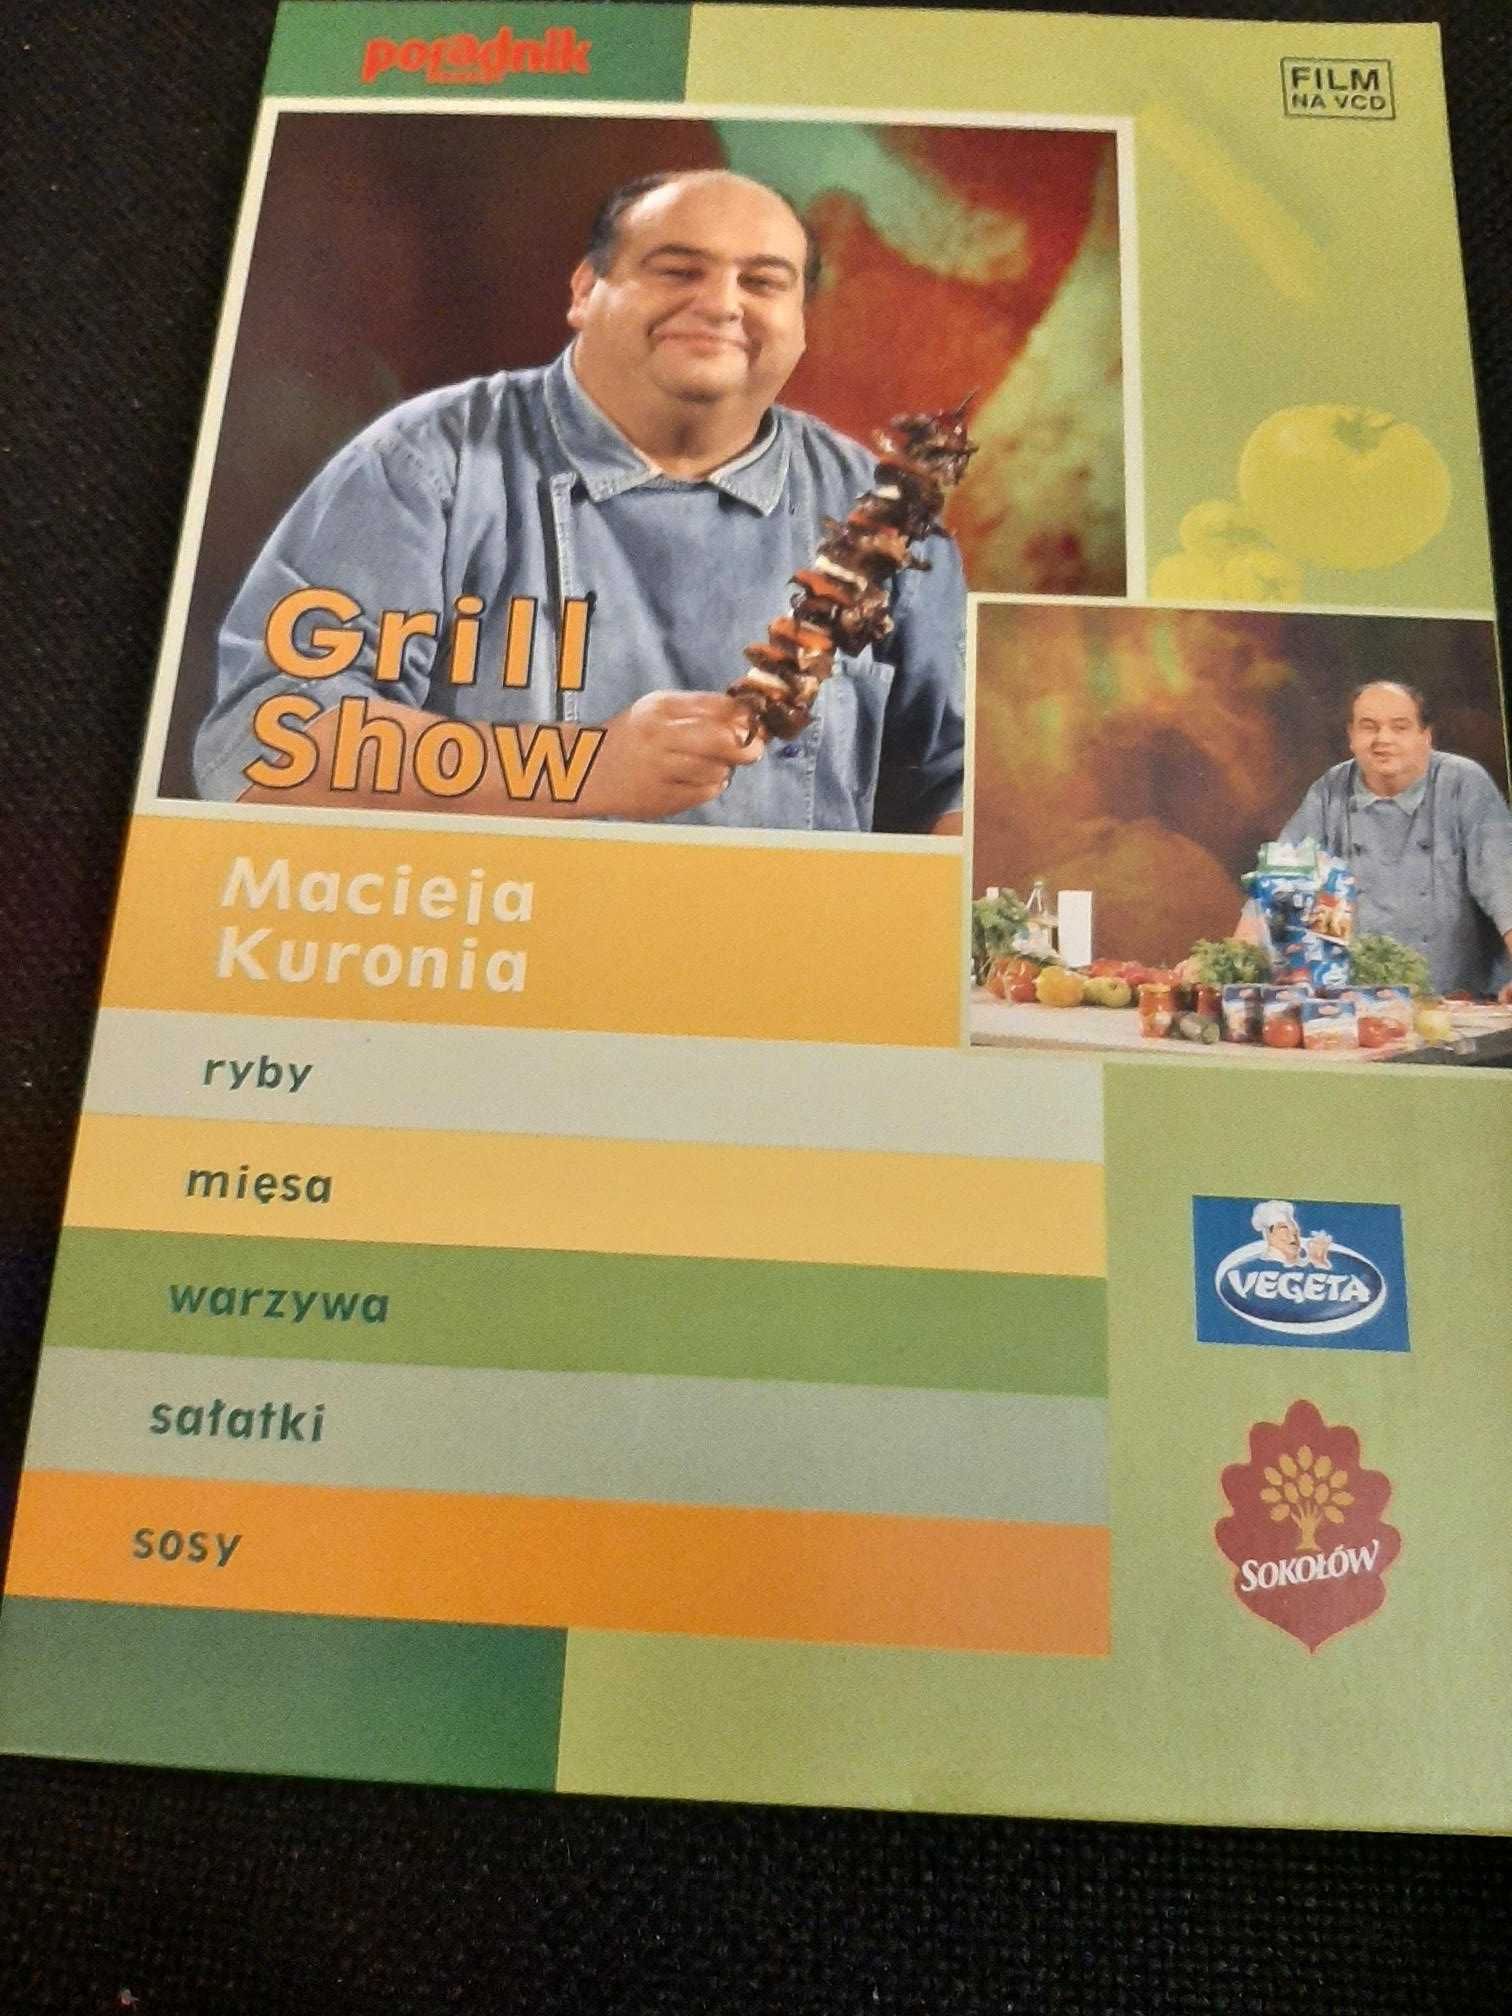 Grill show Macieja Kuronia, płyta CD-ROM